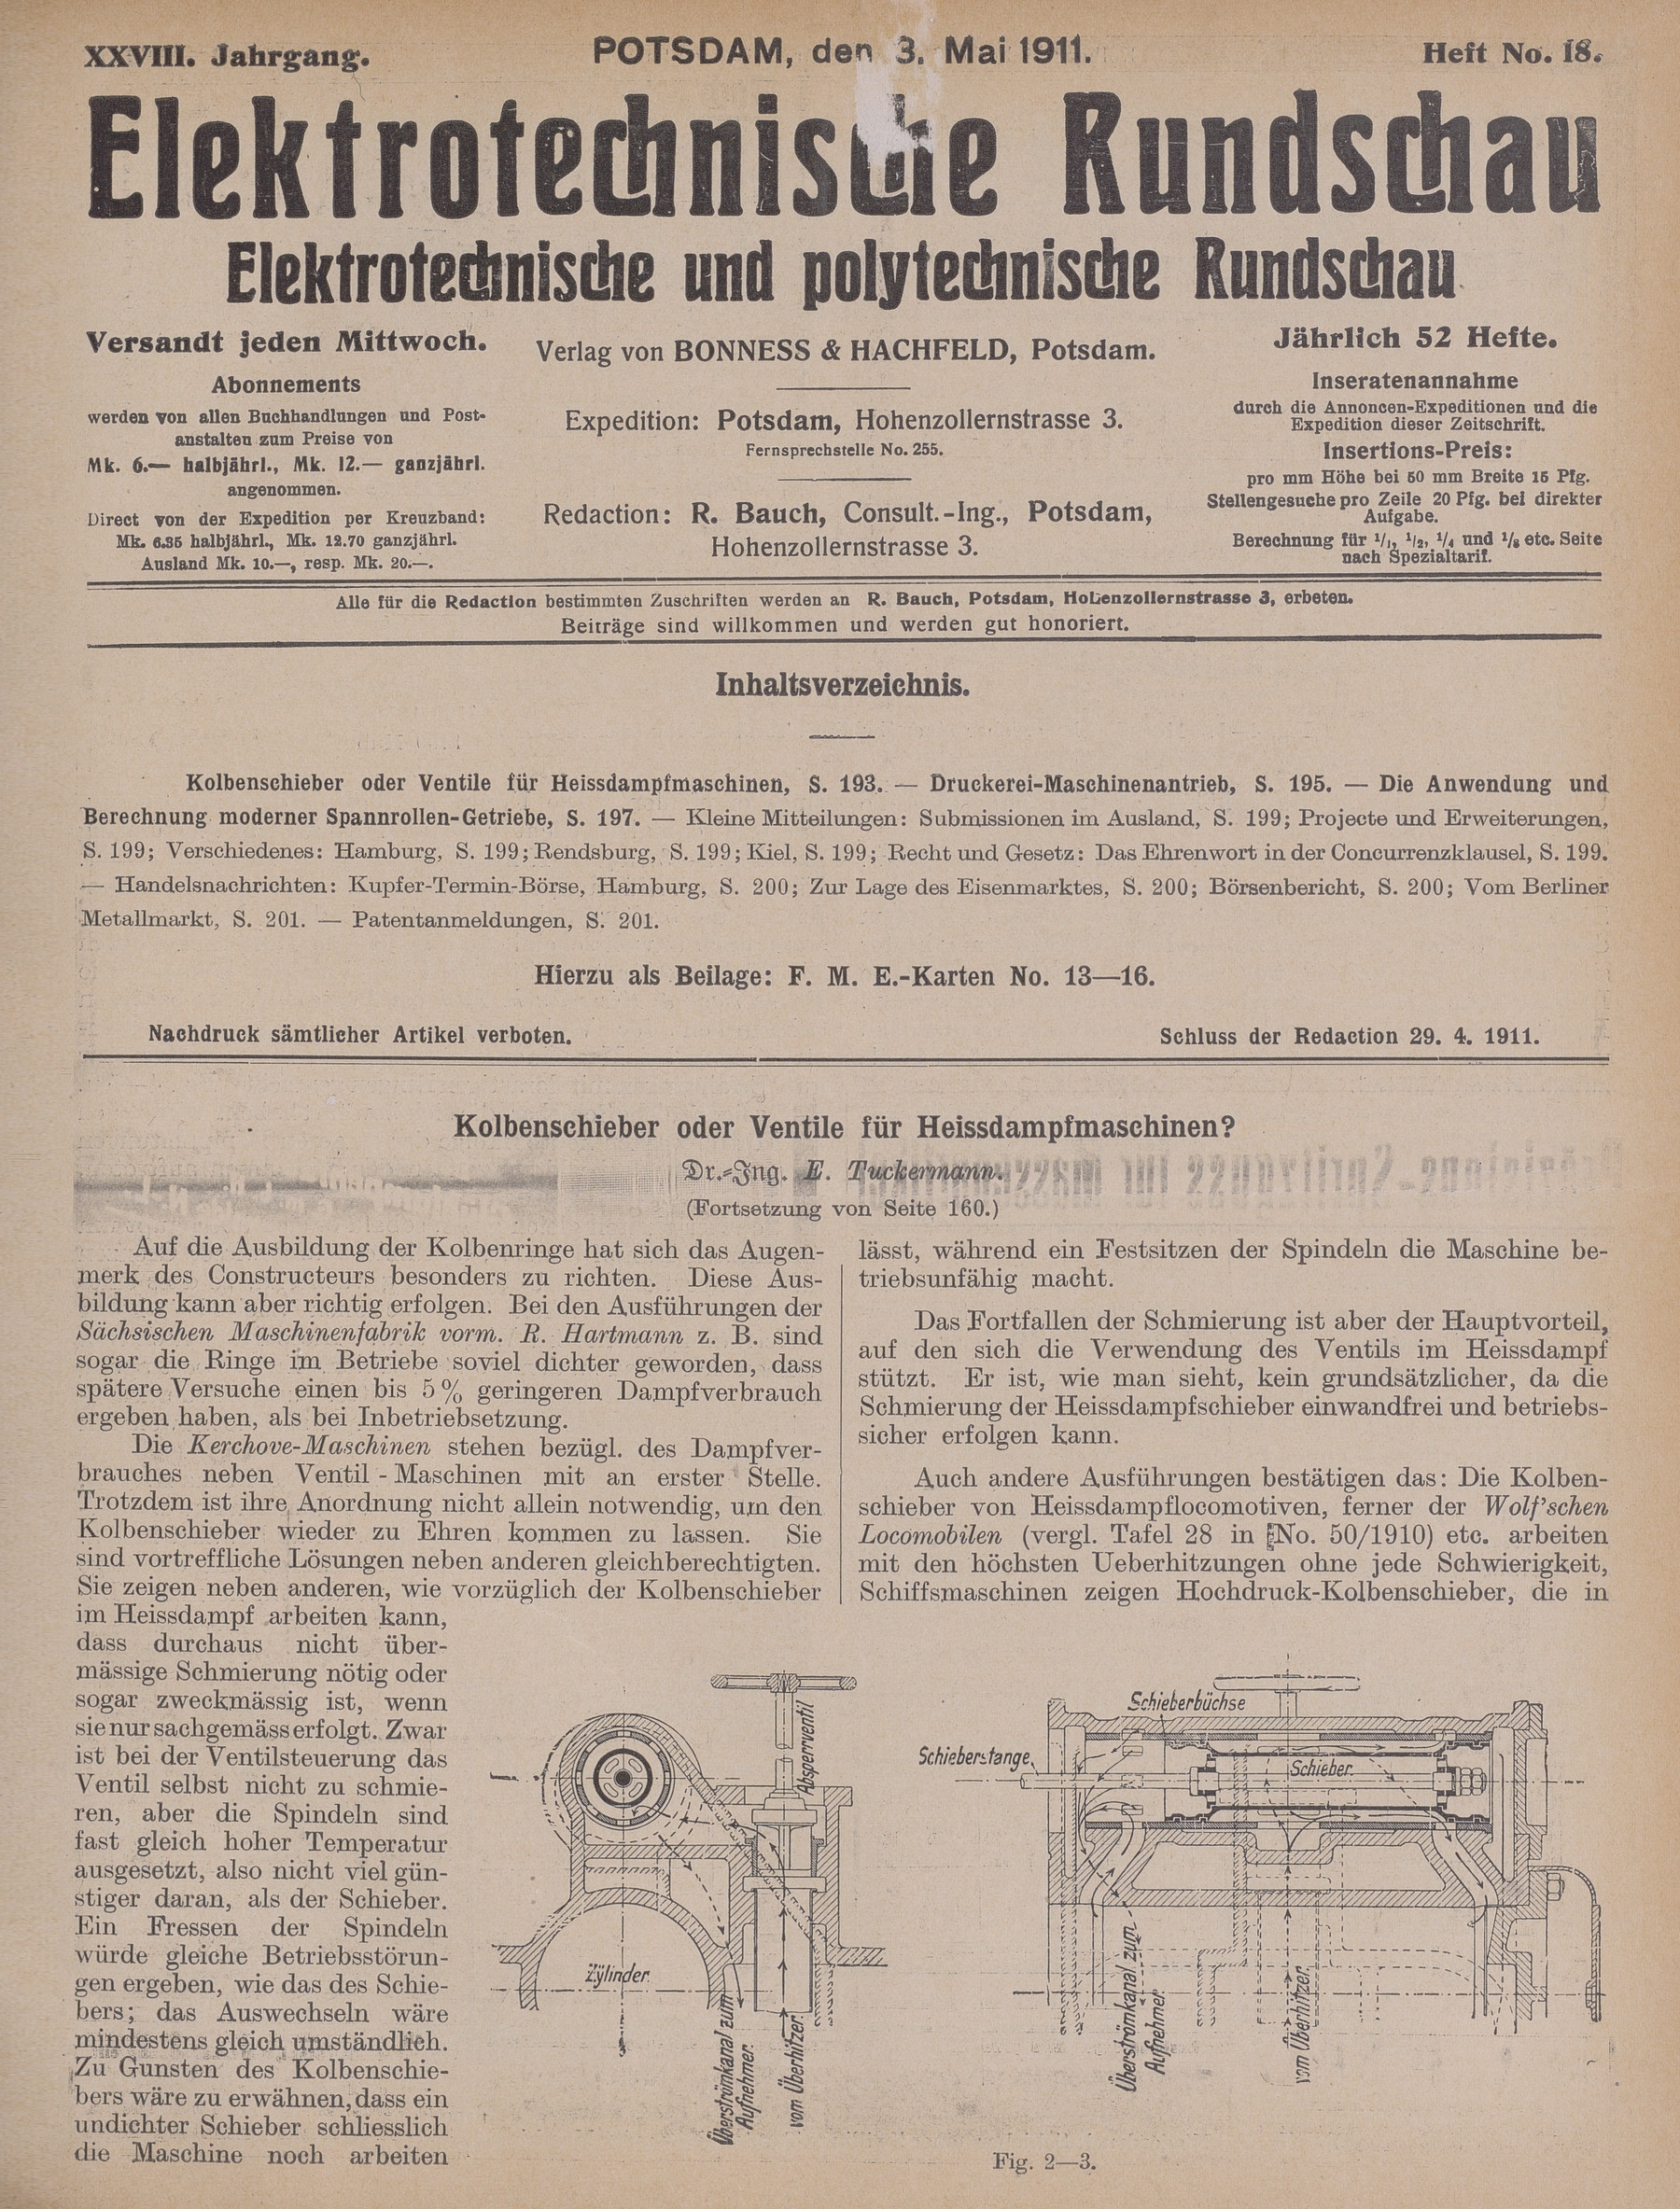 Elektrotechnische Rundschau : Elektrotechnische und polytechnische Rundschau, XXVIII. Jahrgang, Heft No. 18